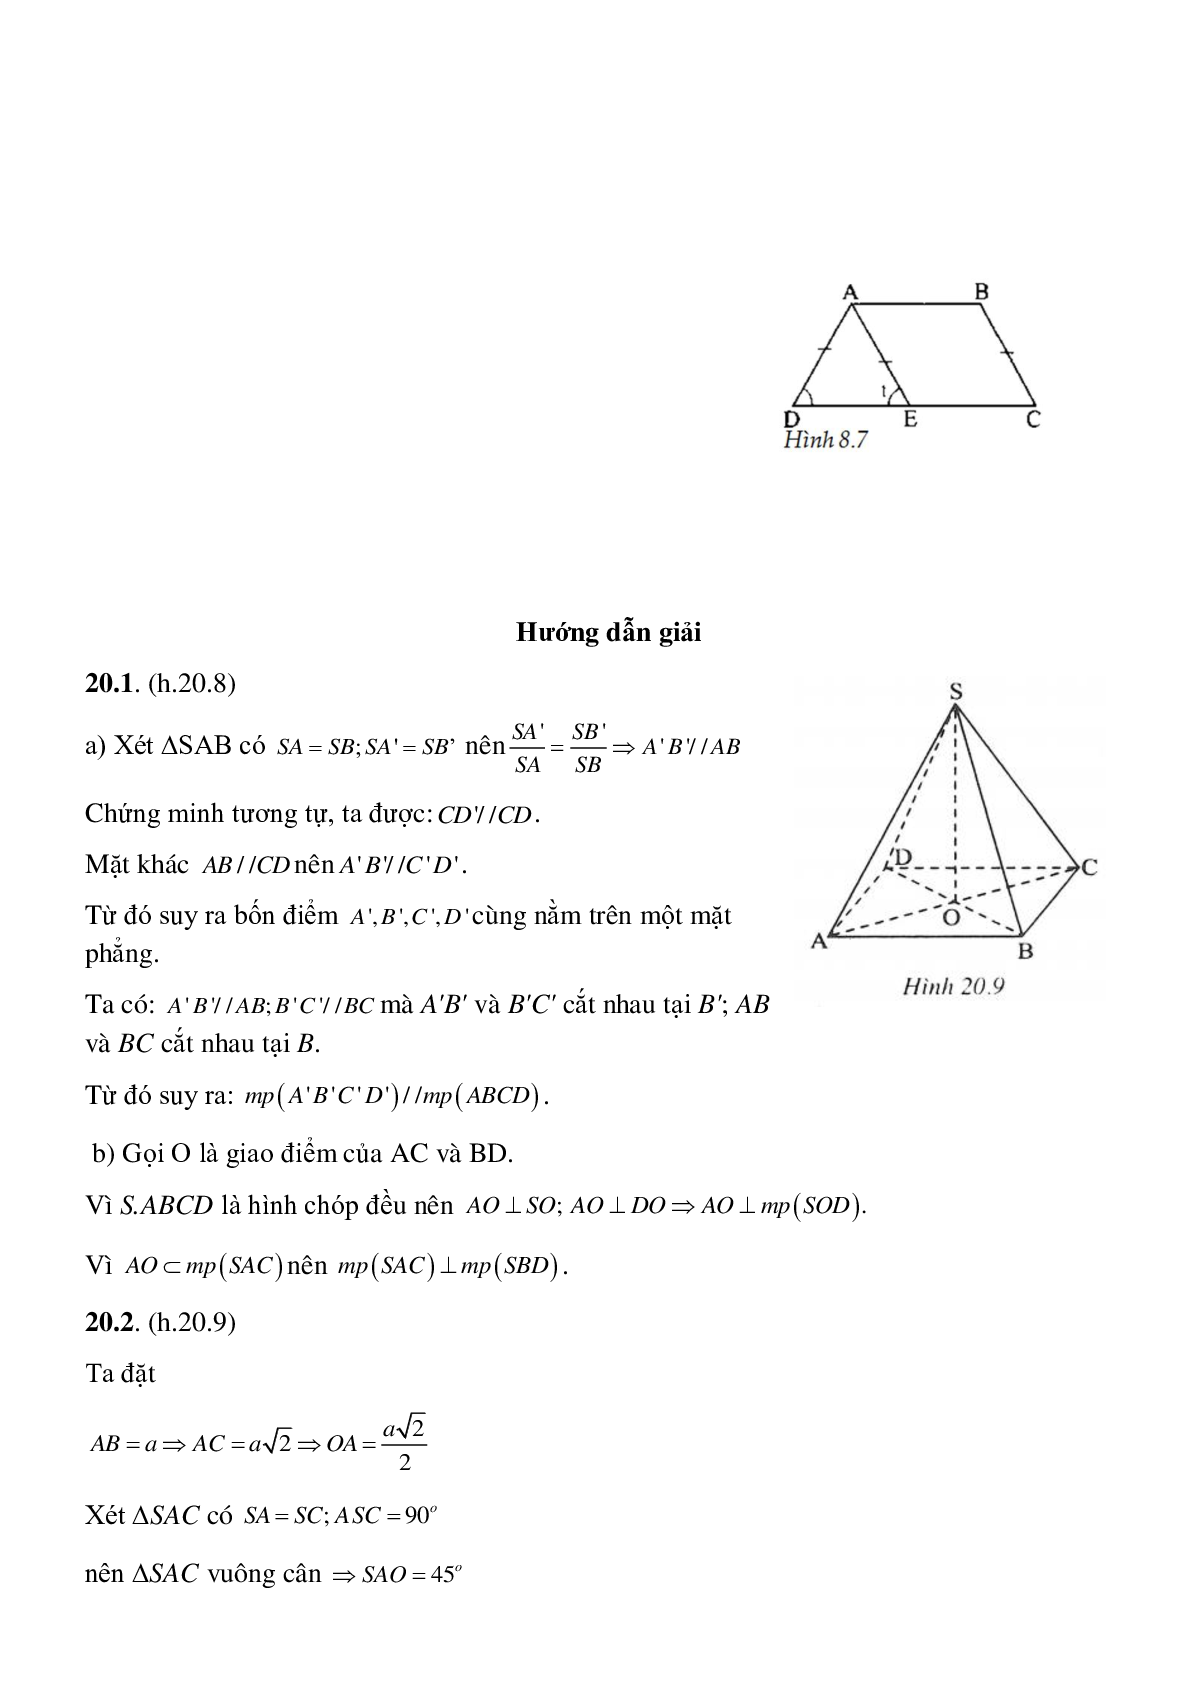 Hình chóp đều - Hình học toán 8 (trang 7)